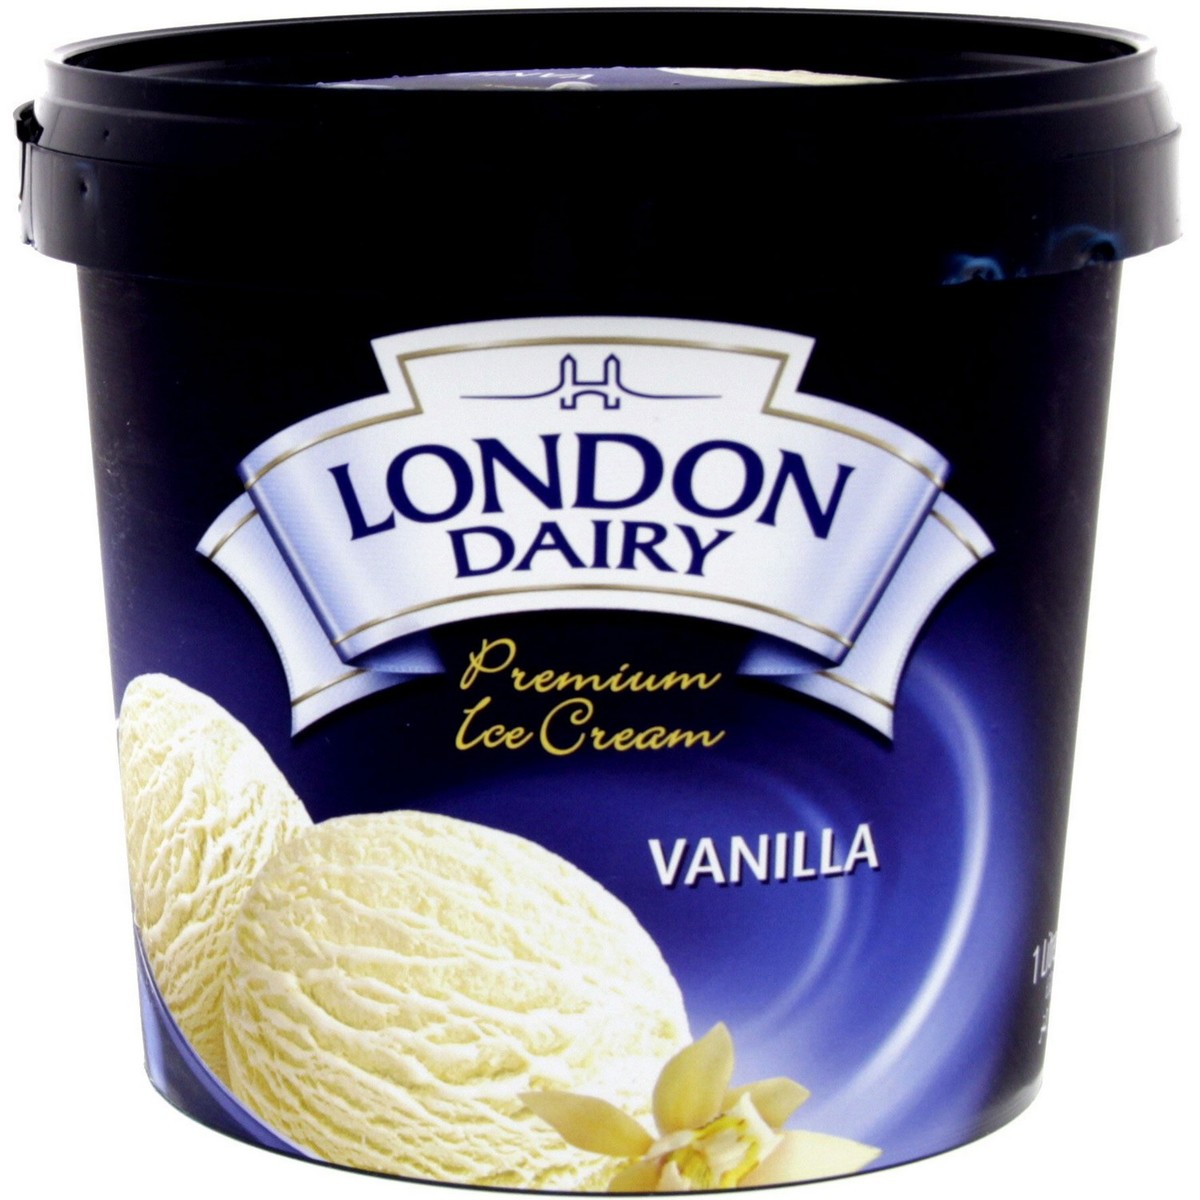 اشتري قم بشراء لندن ديري ايس كريم فانيليا 1 لتر Online at Best Price من الموقع - من لولو هايبر ماركت Ice Cream Take Home في الامارات